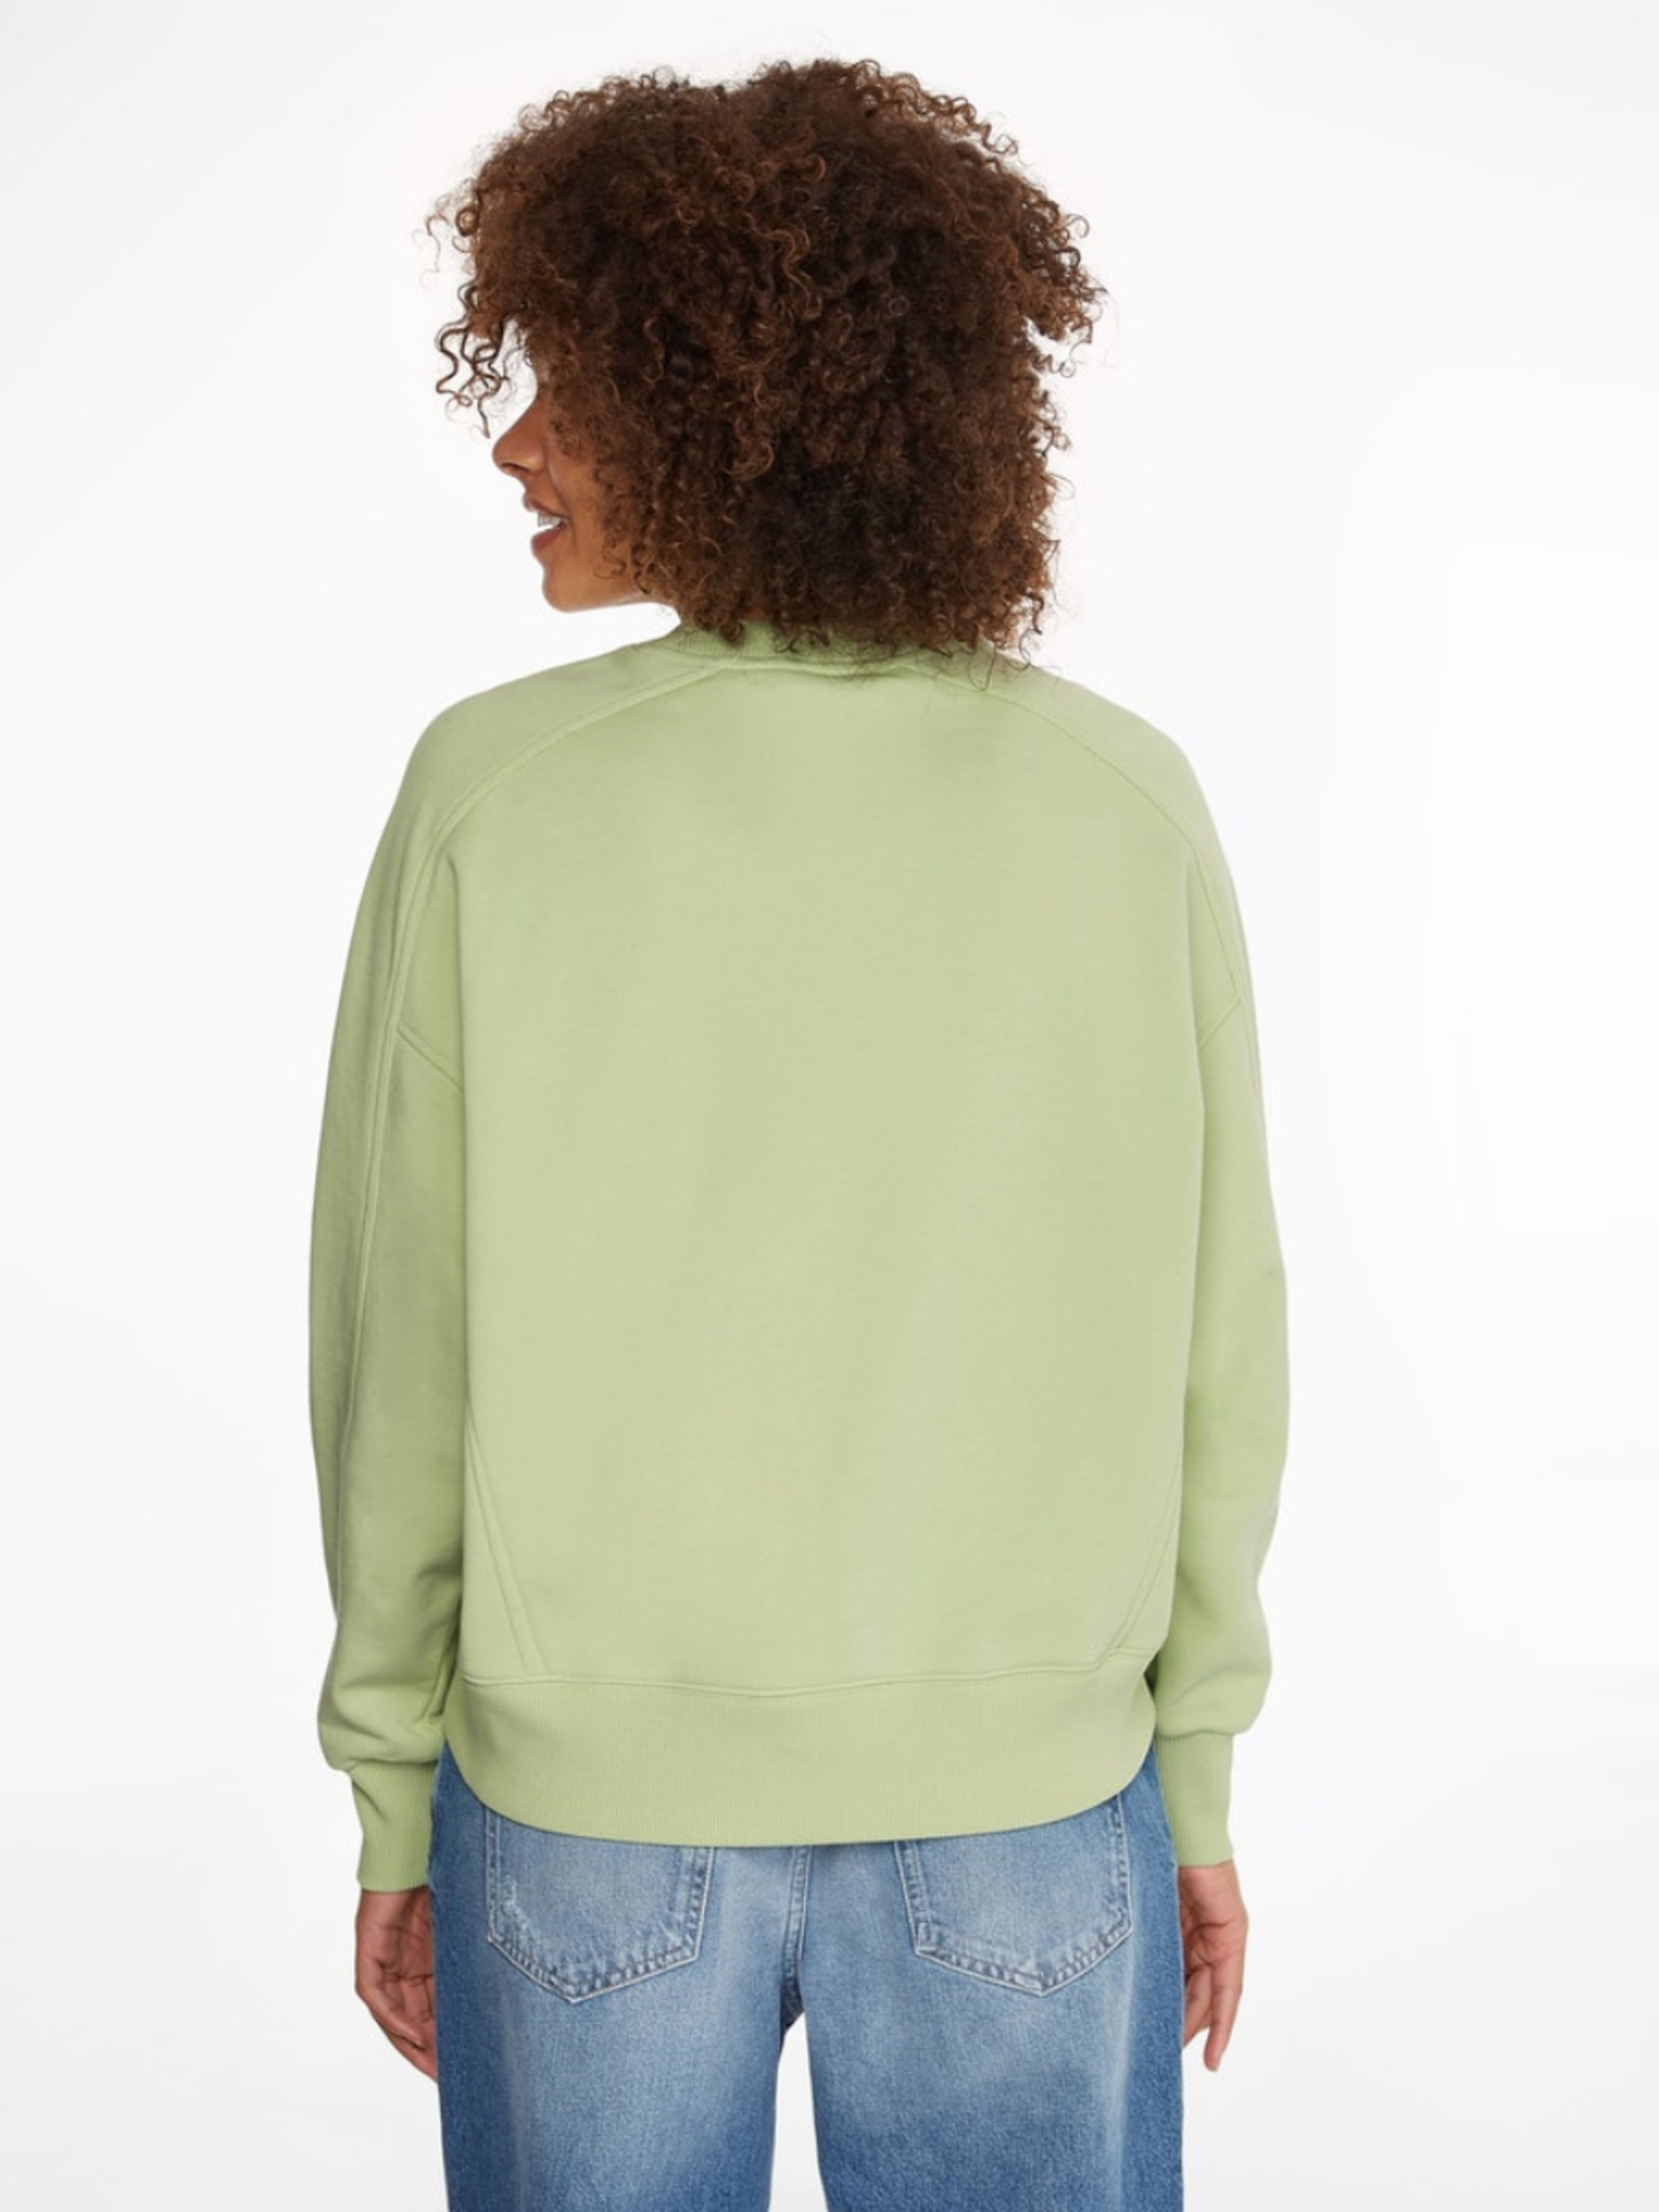 Calvin Klein dámská zelená mikina - XS (L99)